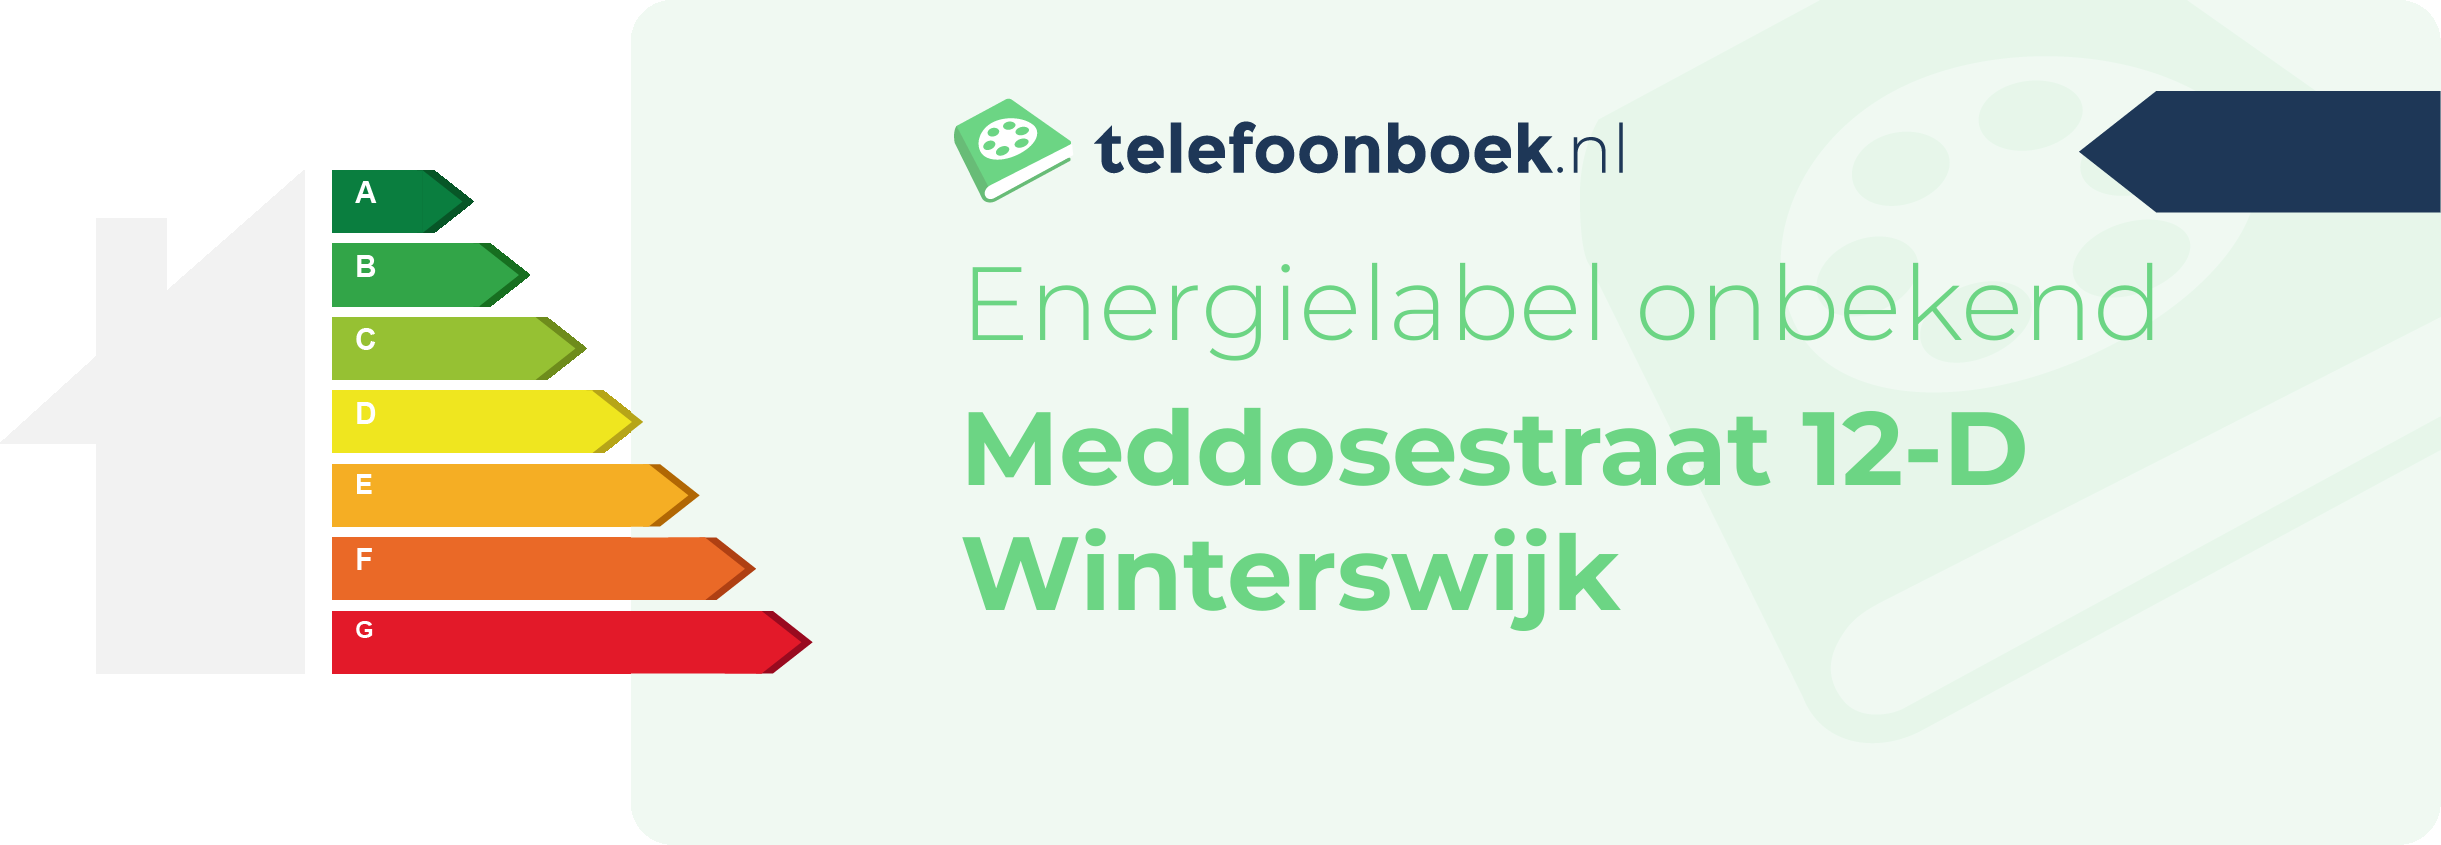 Energielabel Meddosestraat 12-D Winterswijk